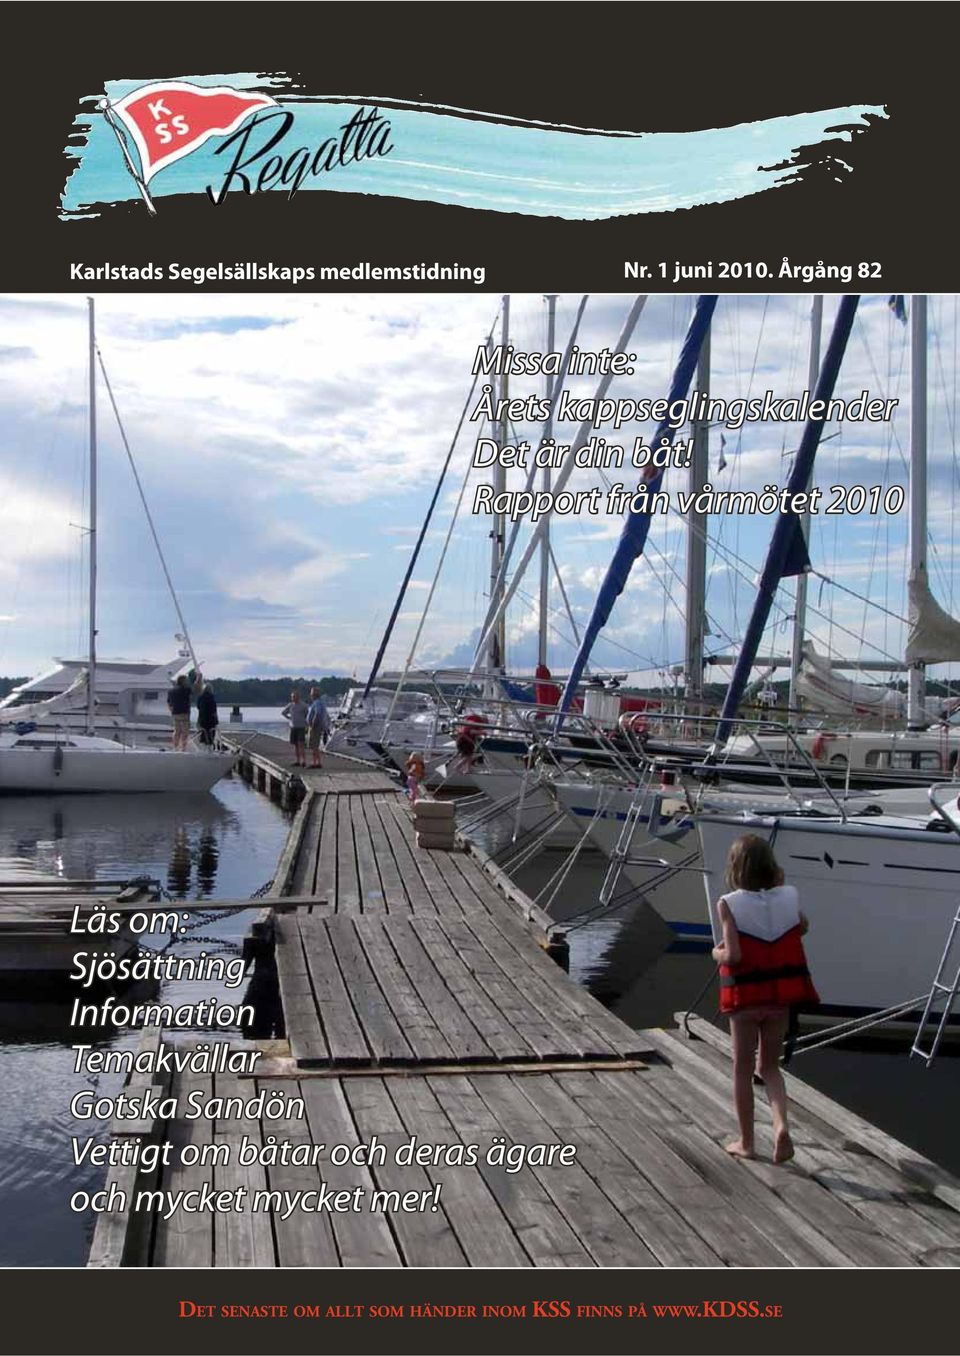 Rapport från vårmötet 2010 Läs om: Sjösättning Information Temakvällar Gotska Sandön Vettigt om